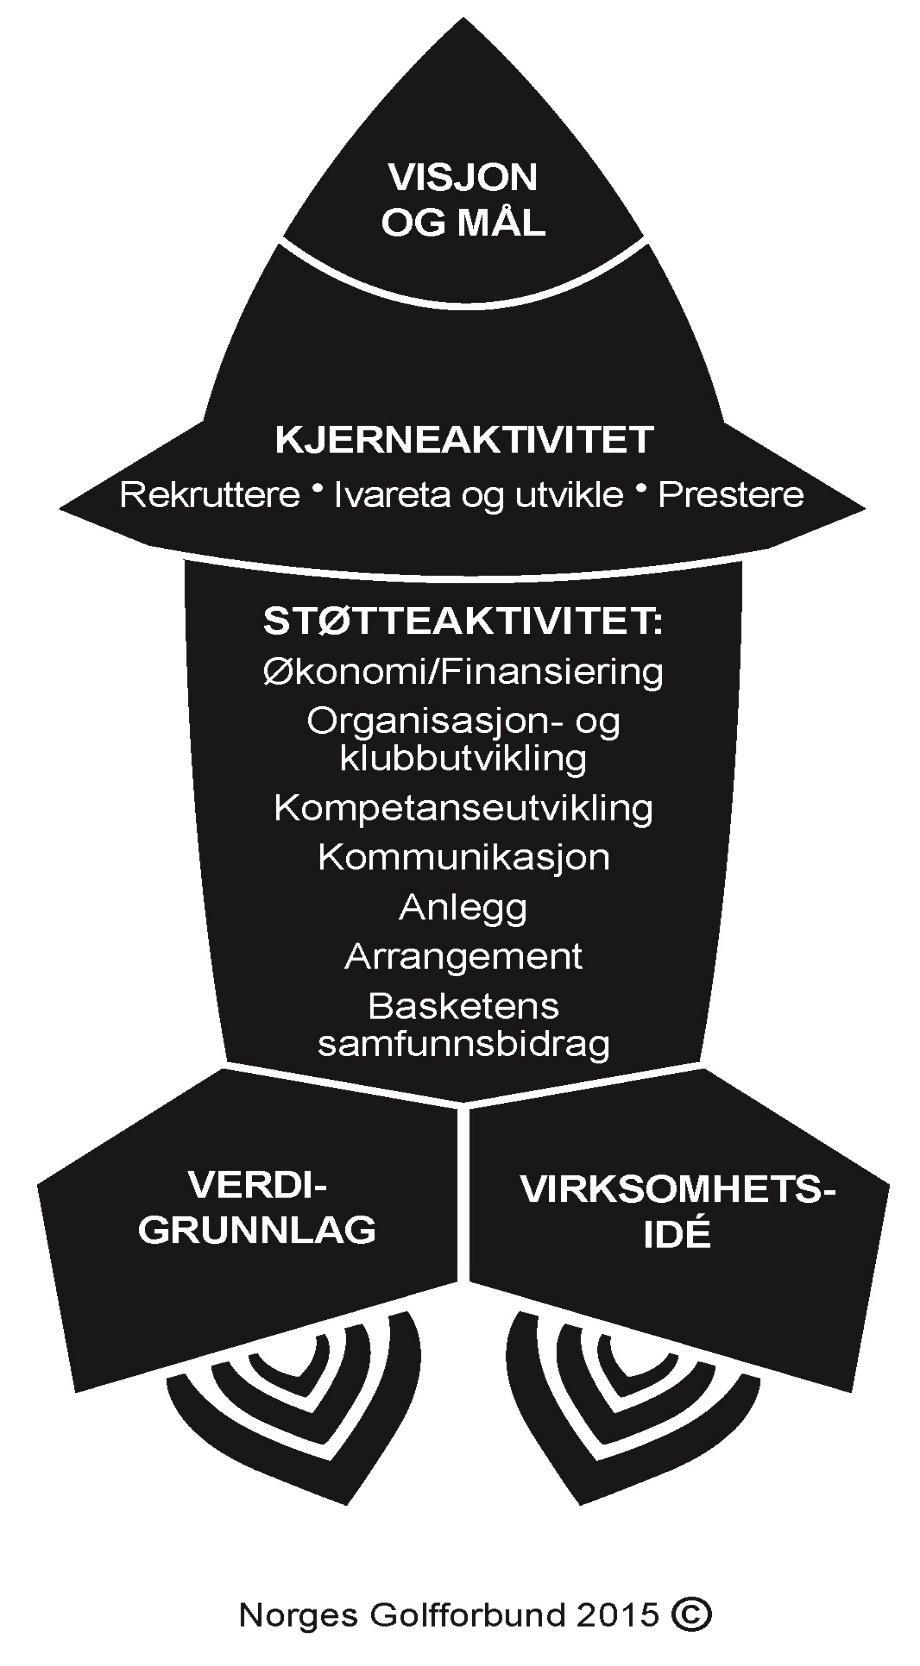 Vedlegg 8.5: Virksomhetsraketten Virksomhetsraketten er et mentalt bilde av «Felles plan for norsk basket».